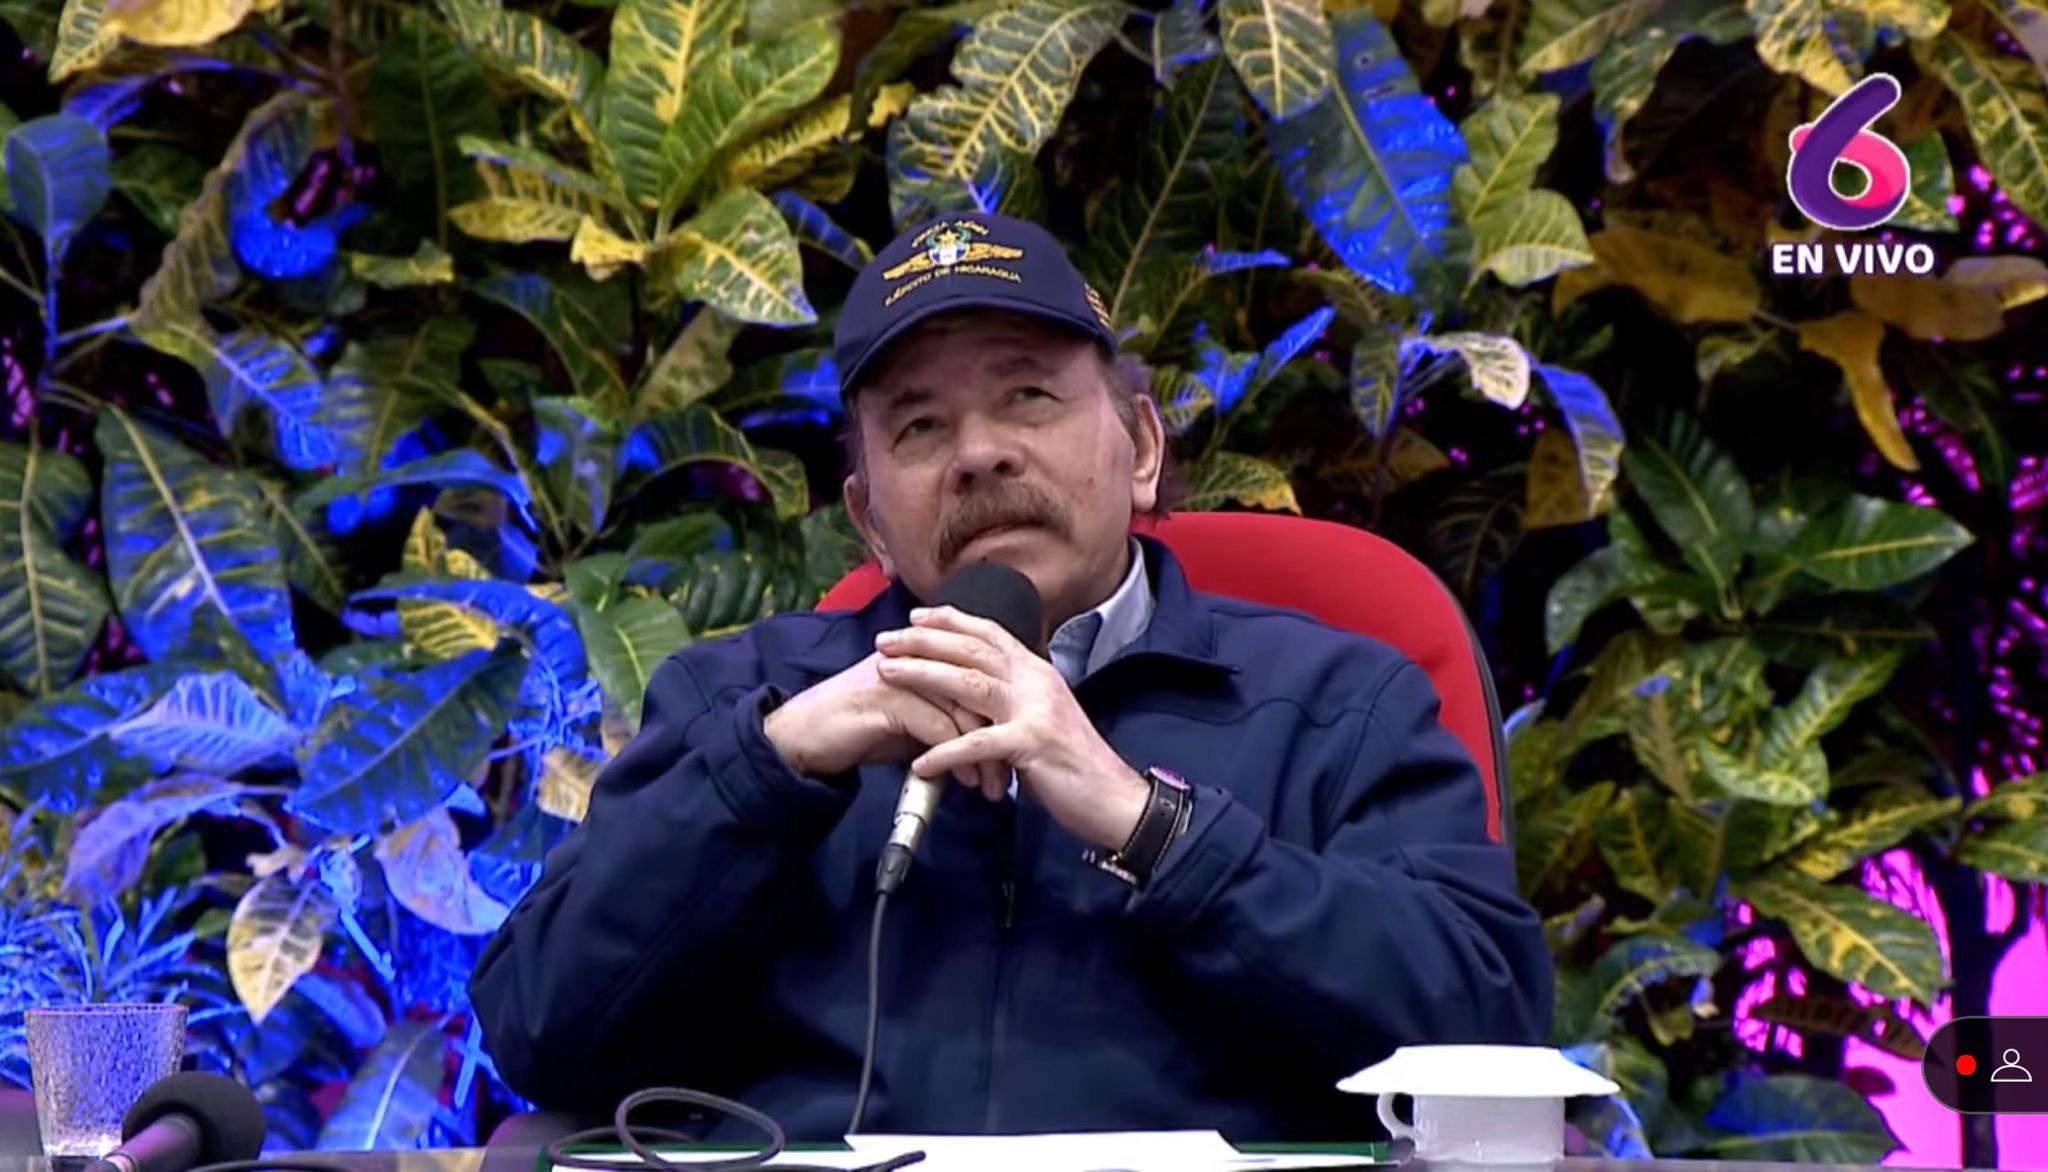 Daniel Ortega contro Usa e Nato: "Vogliono distruggere la Russia"